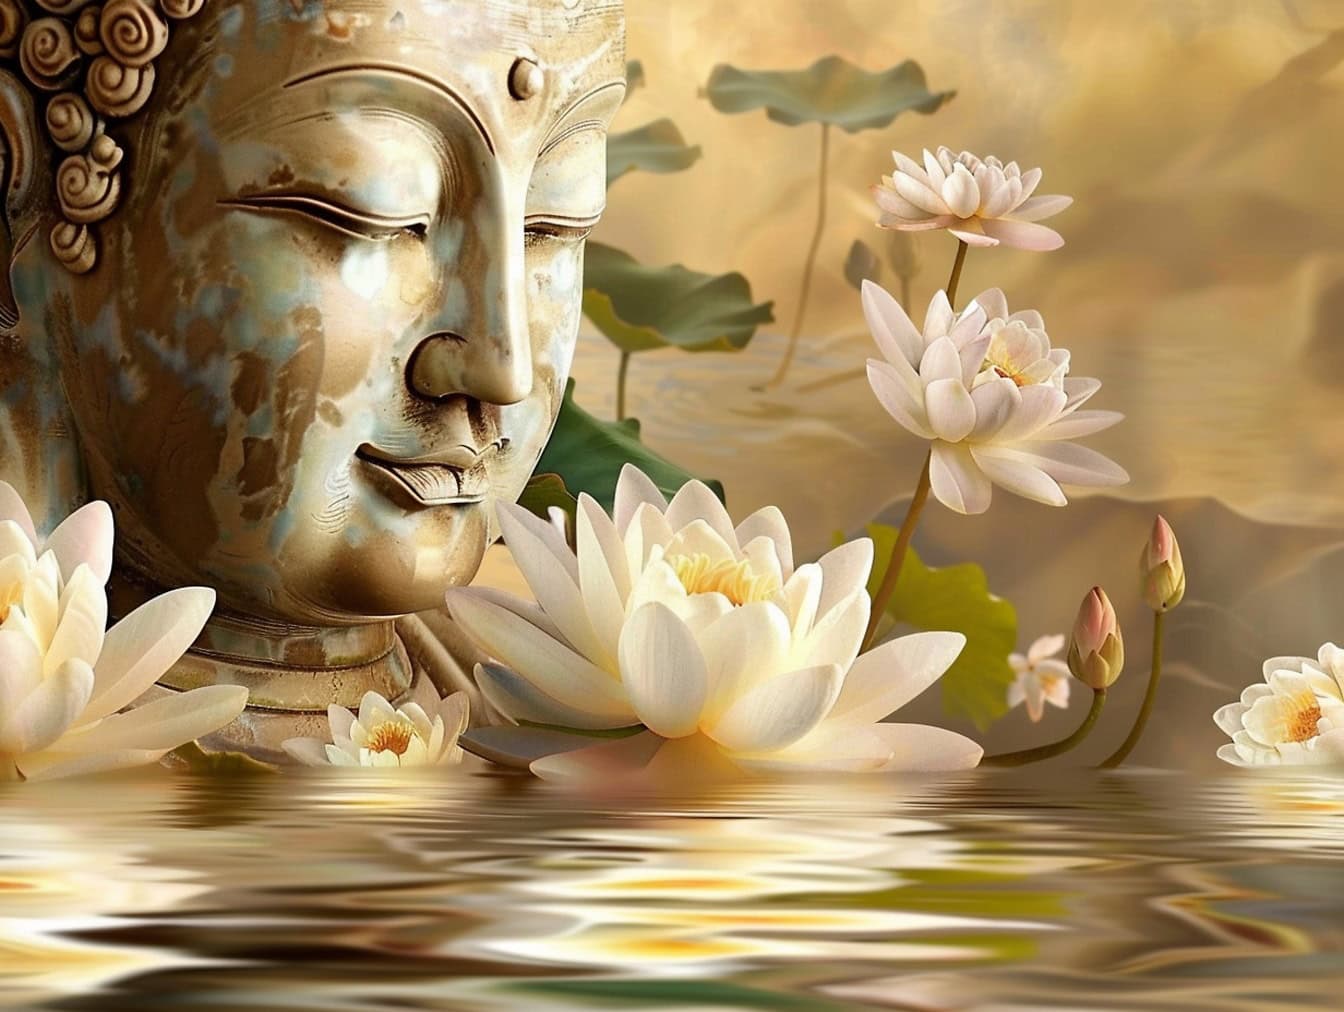 Posąg głowy Buddy z zamkniętymi oczami otoczony białymi kwiatami lotosu